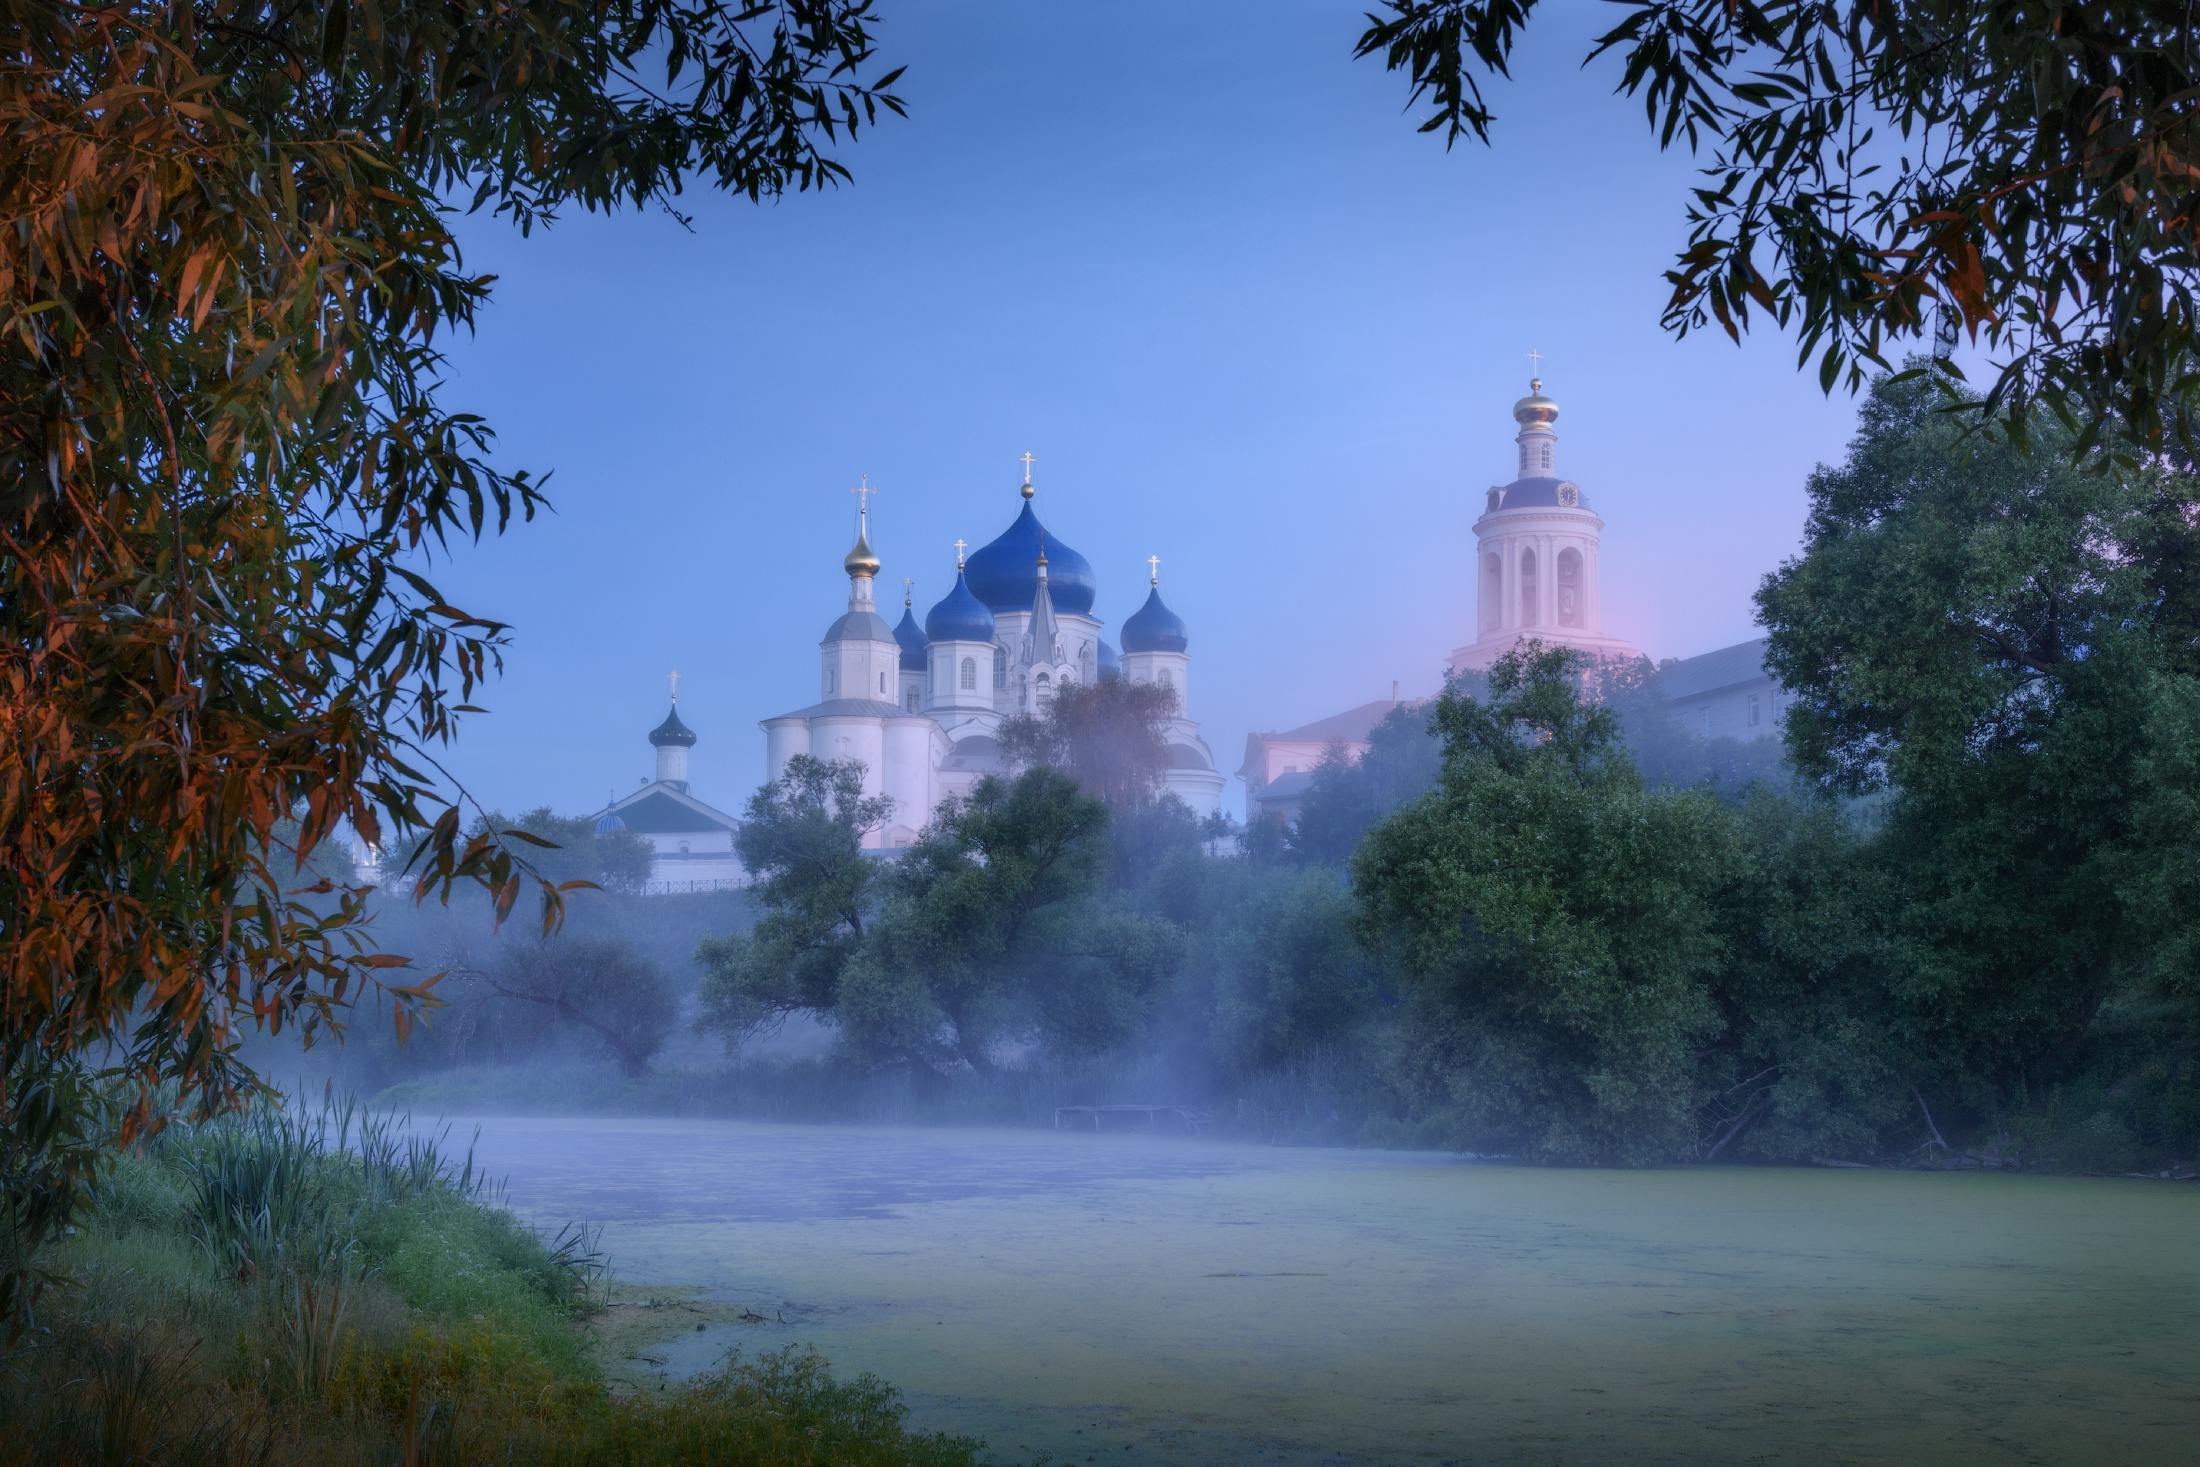 Владимир Свято Боголюбский монастырь